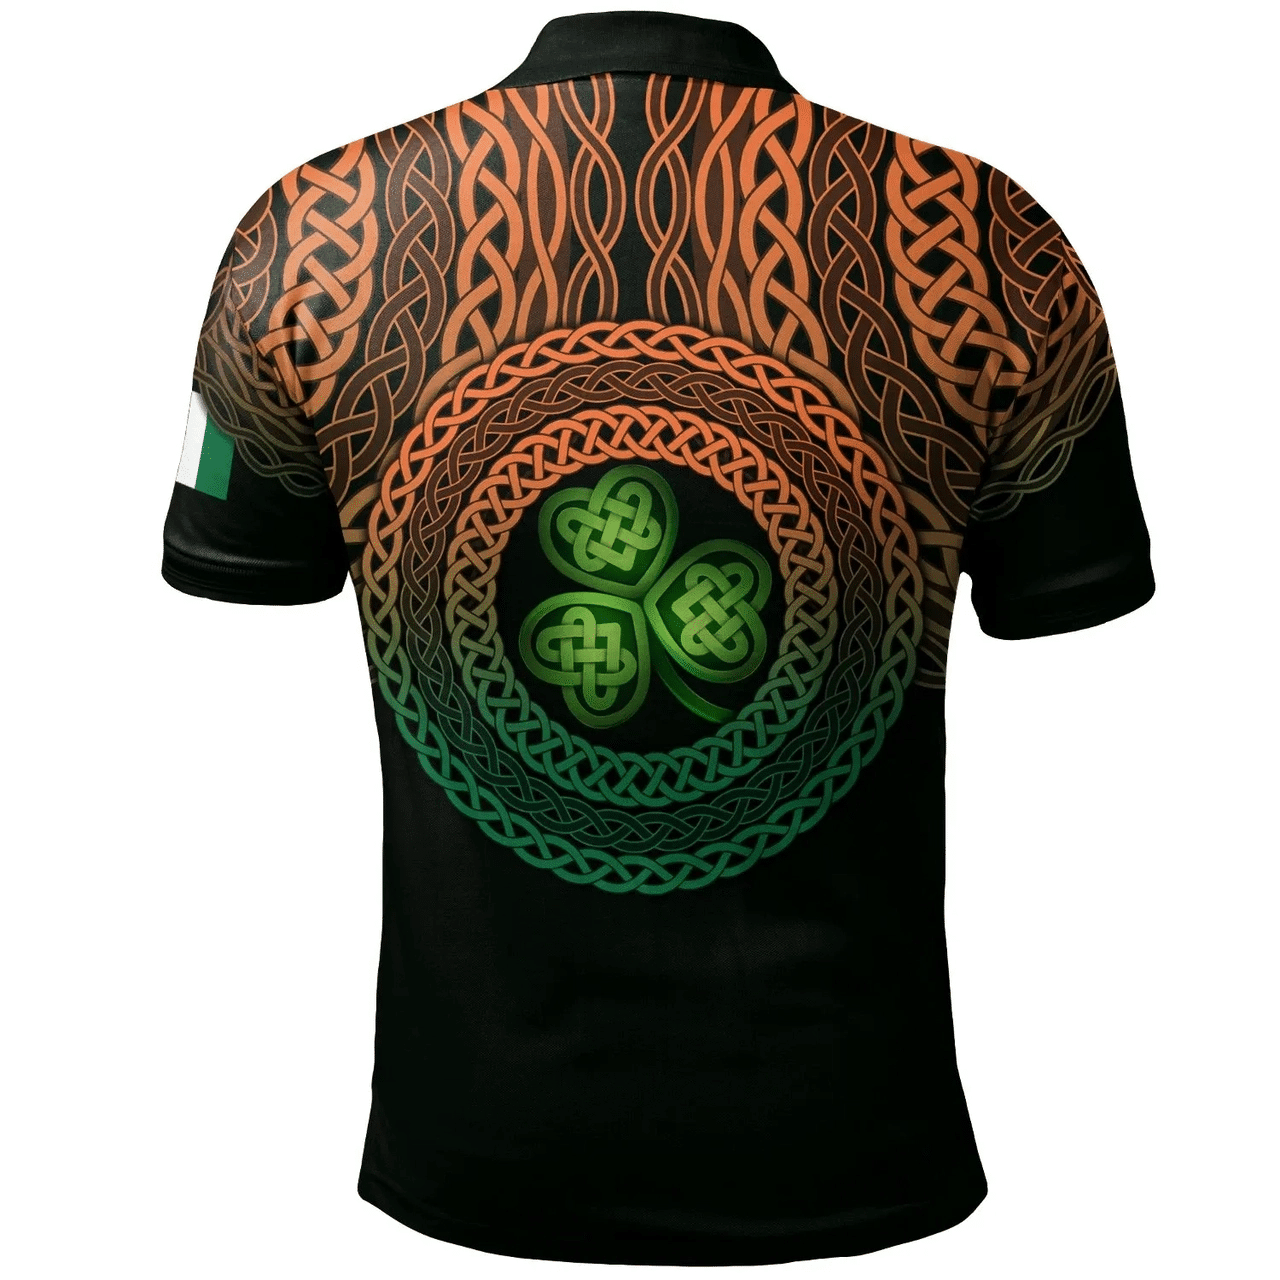 1stIreland Ireland Polo Shirt - Brady or McBrady Irish Family Crest Polo Shirt - Celtic Pride A7 | 1stIreland.com